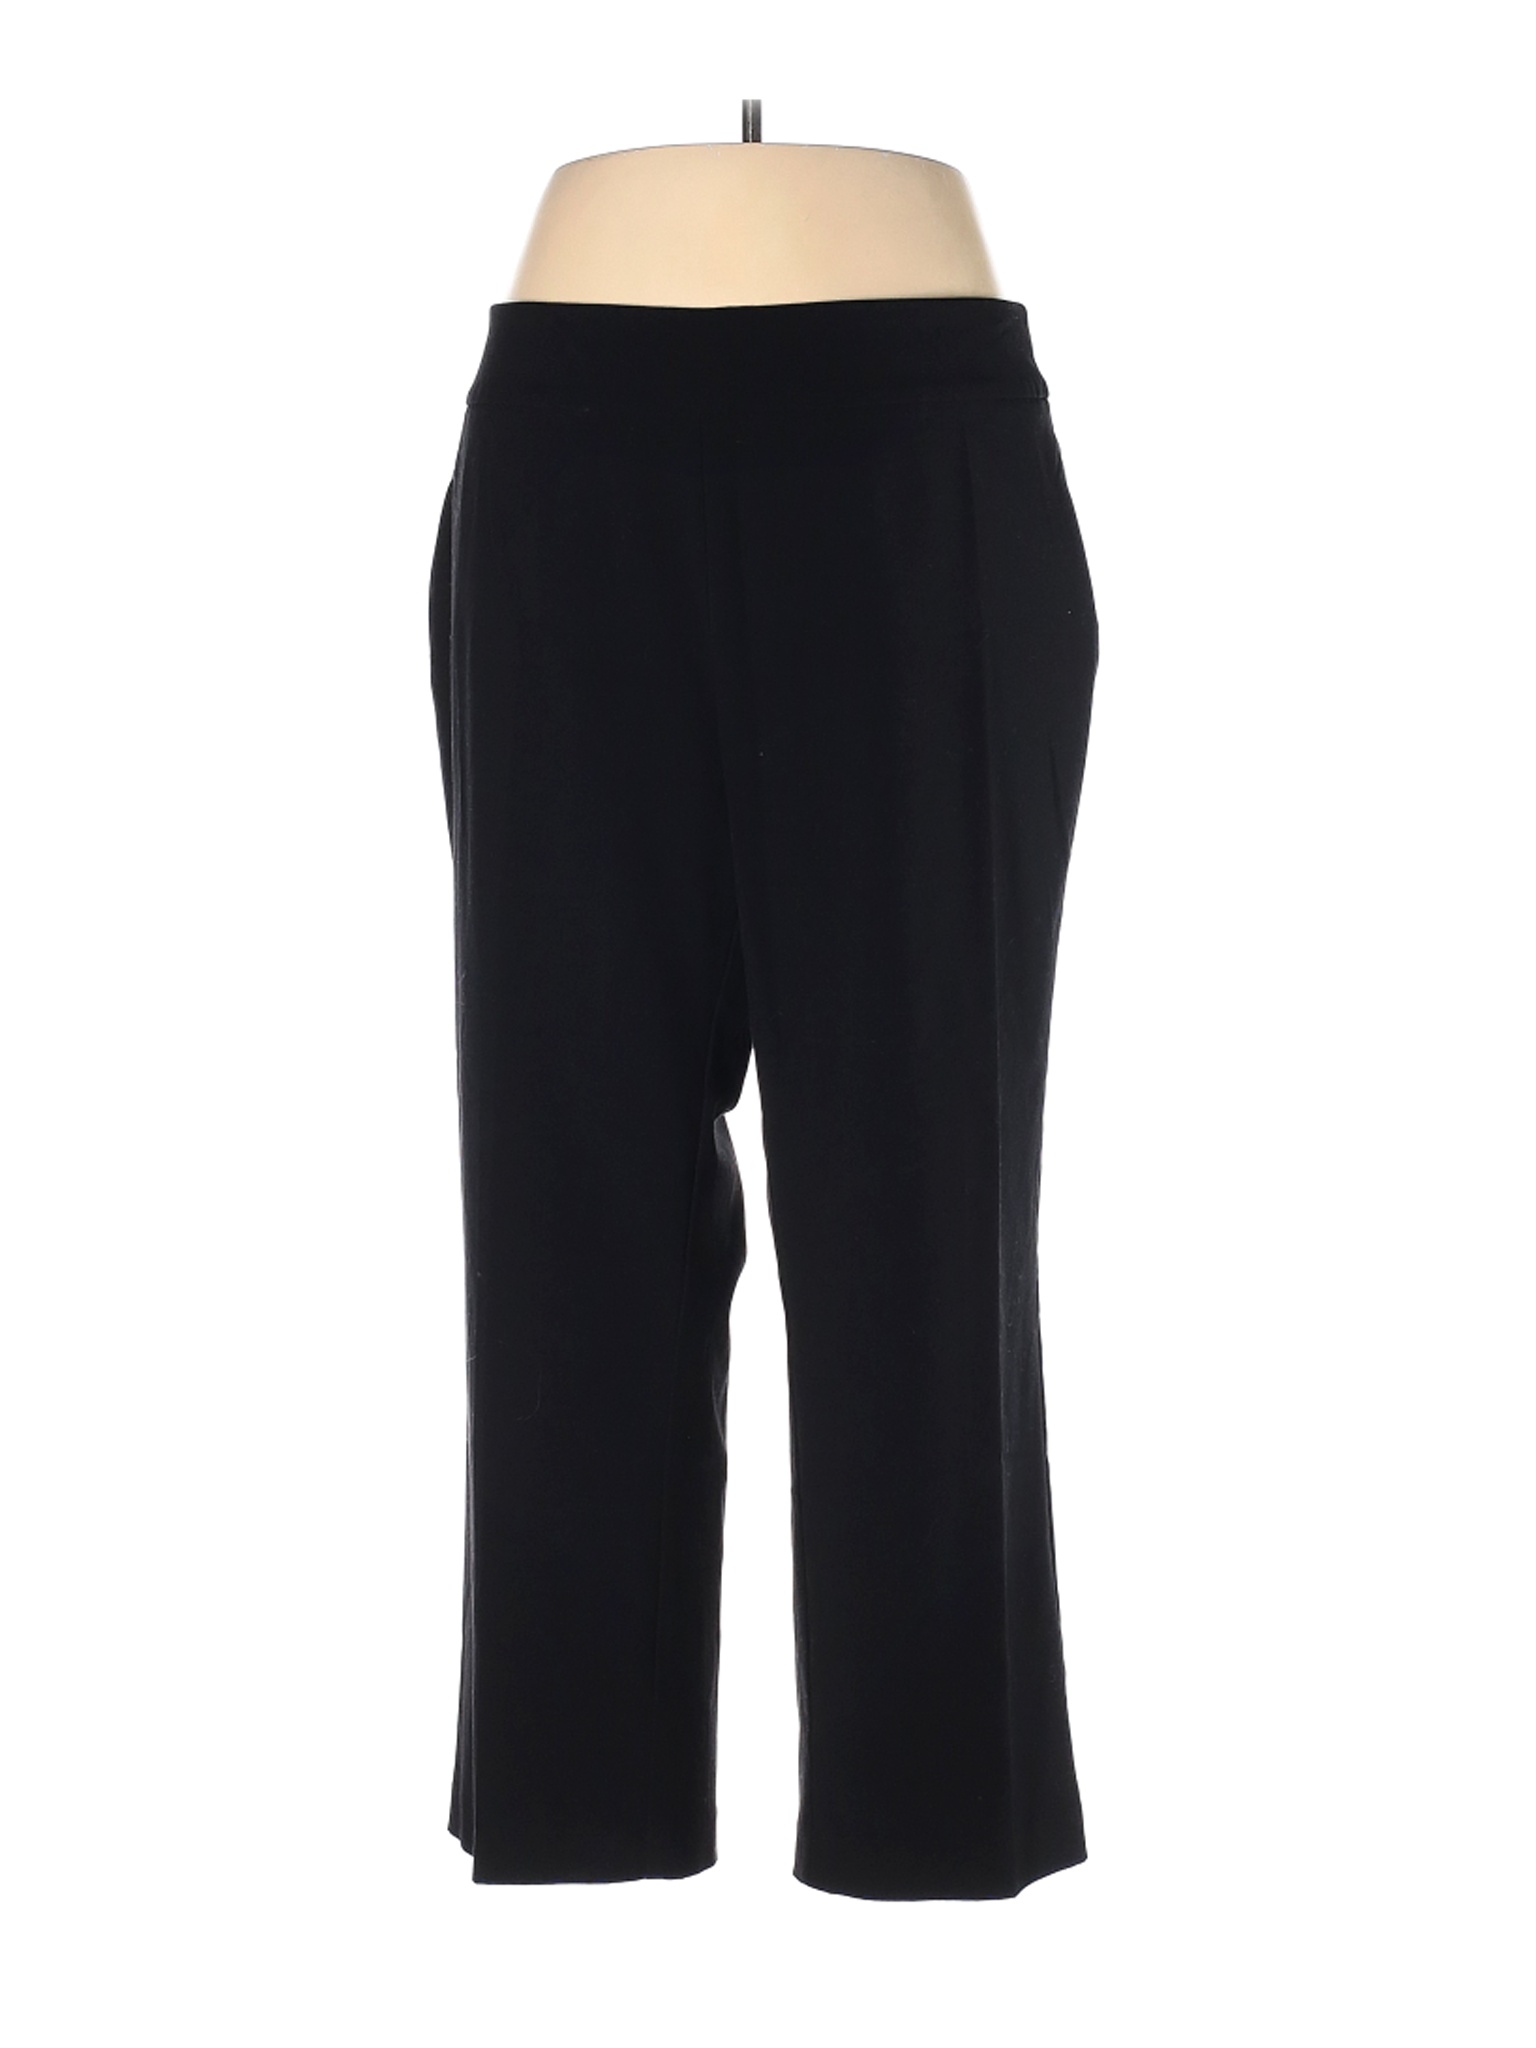 Roz & Ali Women Black Dress Pants 20 Plus | eBay